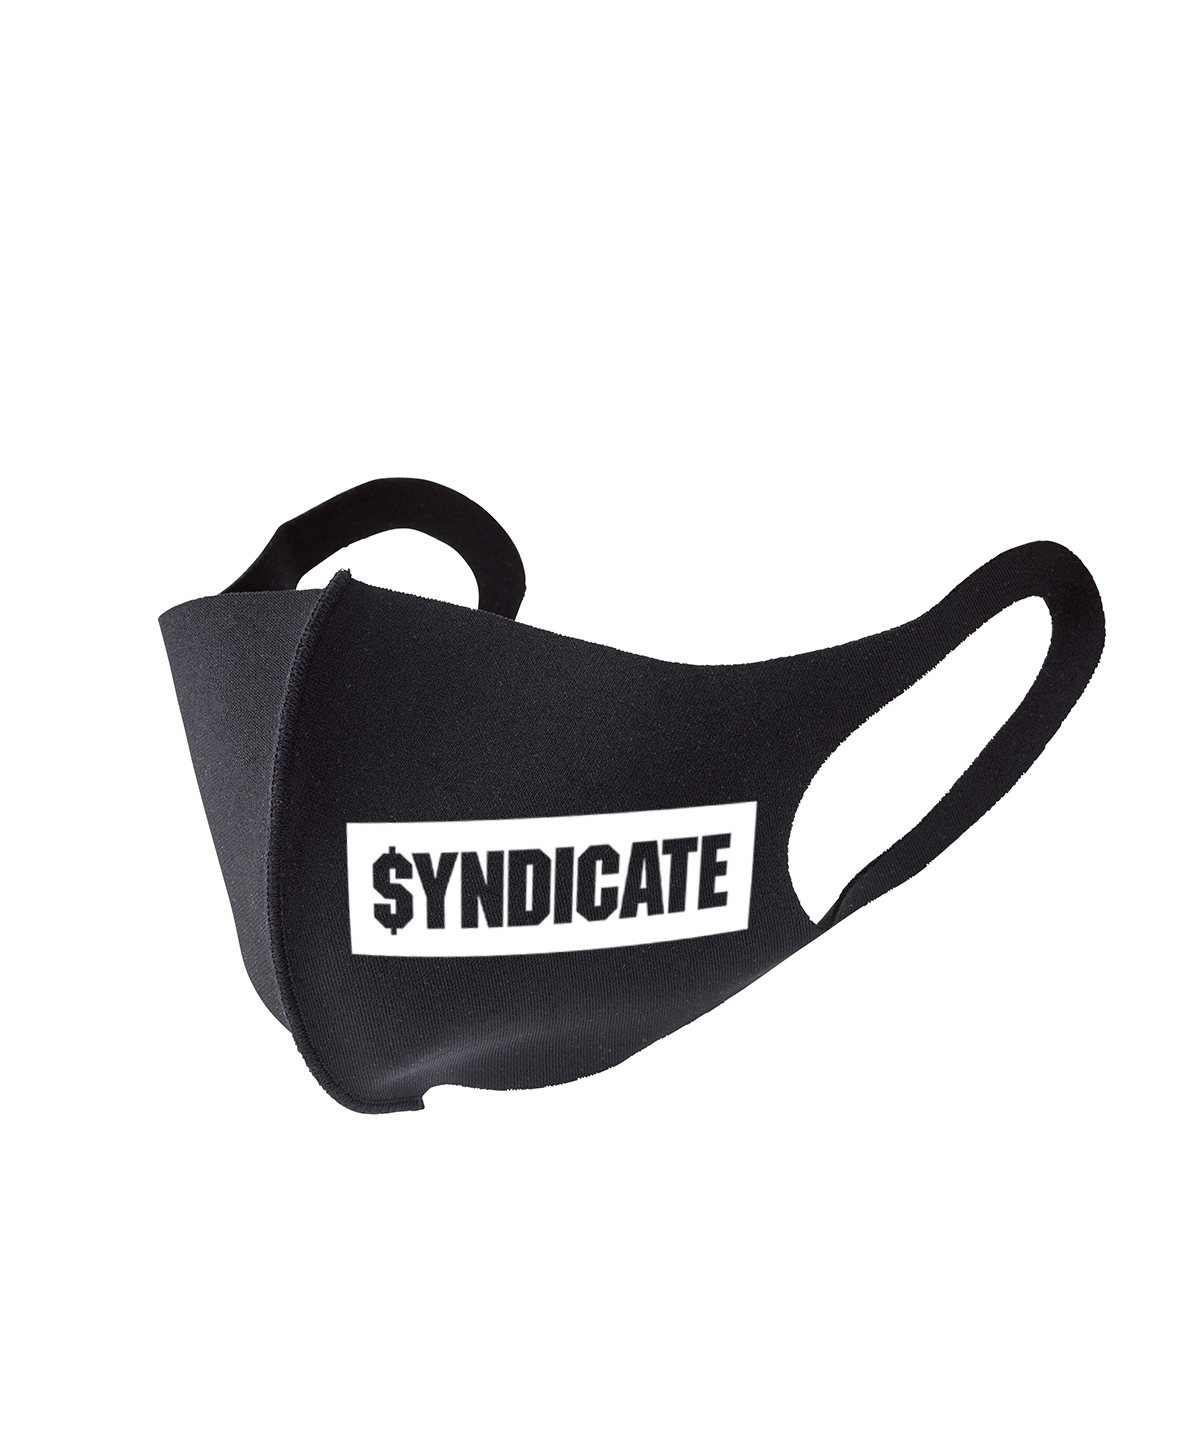 SYNDICATE Logo Mask 2P Set詳細